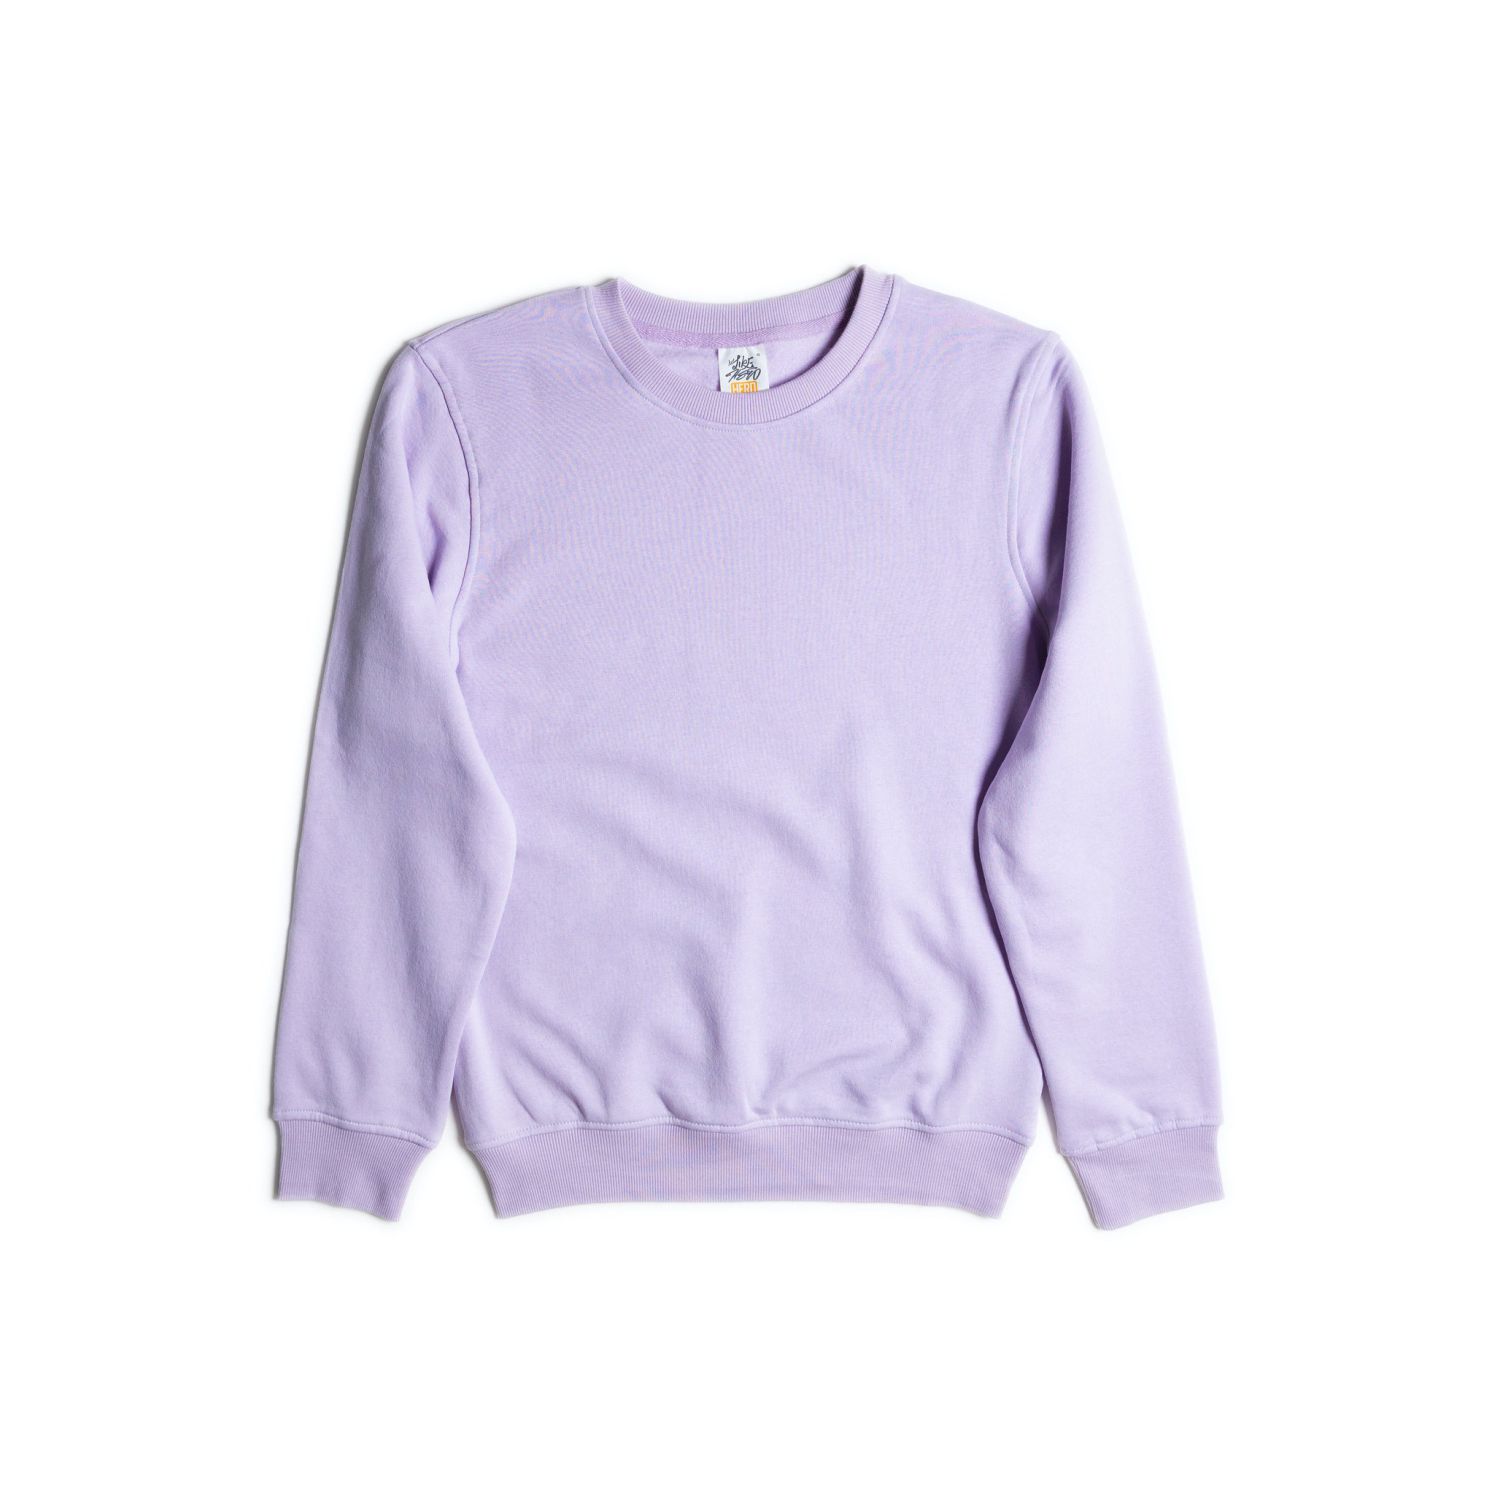 Just Like Hero Crewneck Sweatshirt #1020 Lavender